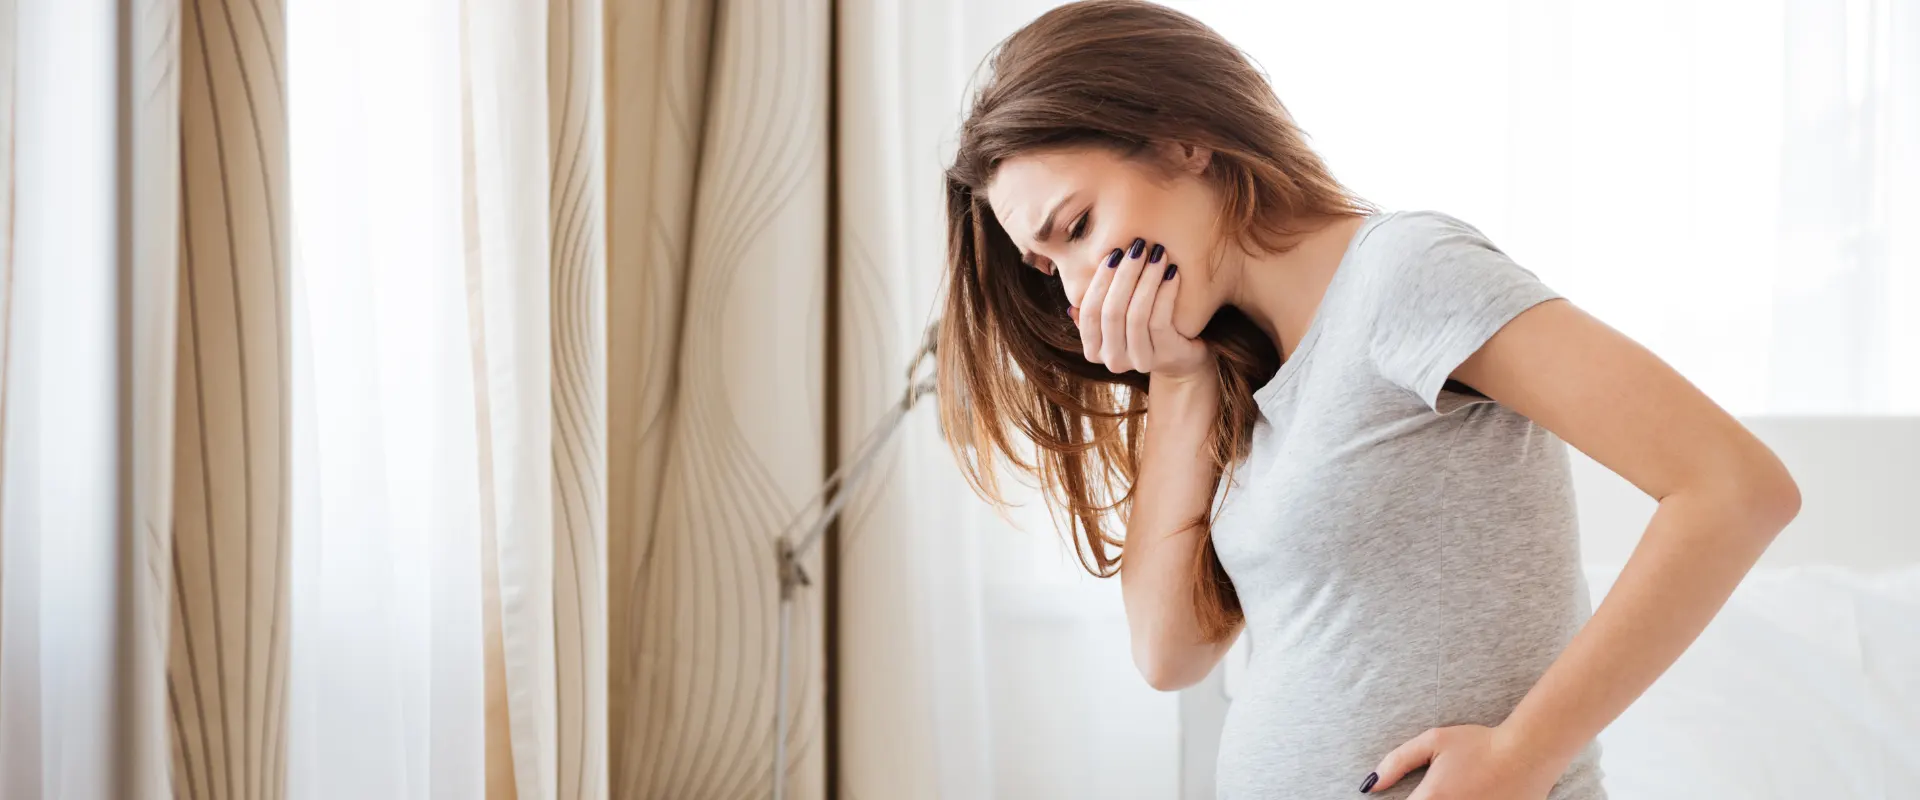 Nausea in gravidanza: rimedi e consigli per combatterla